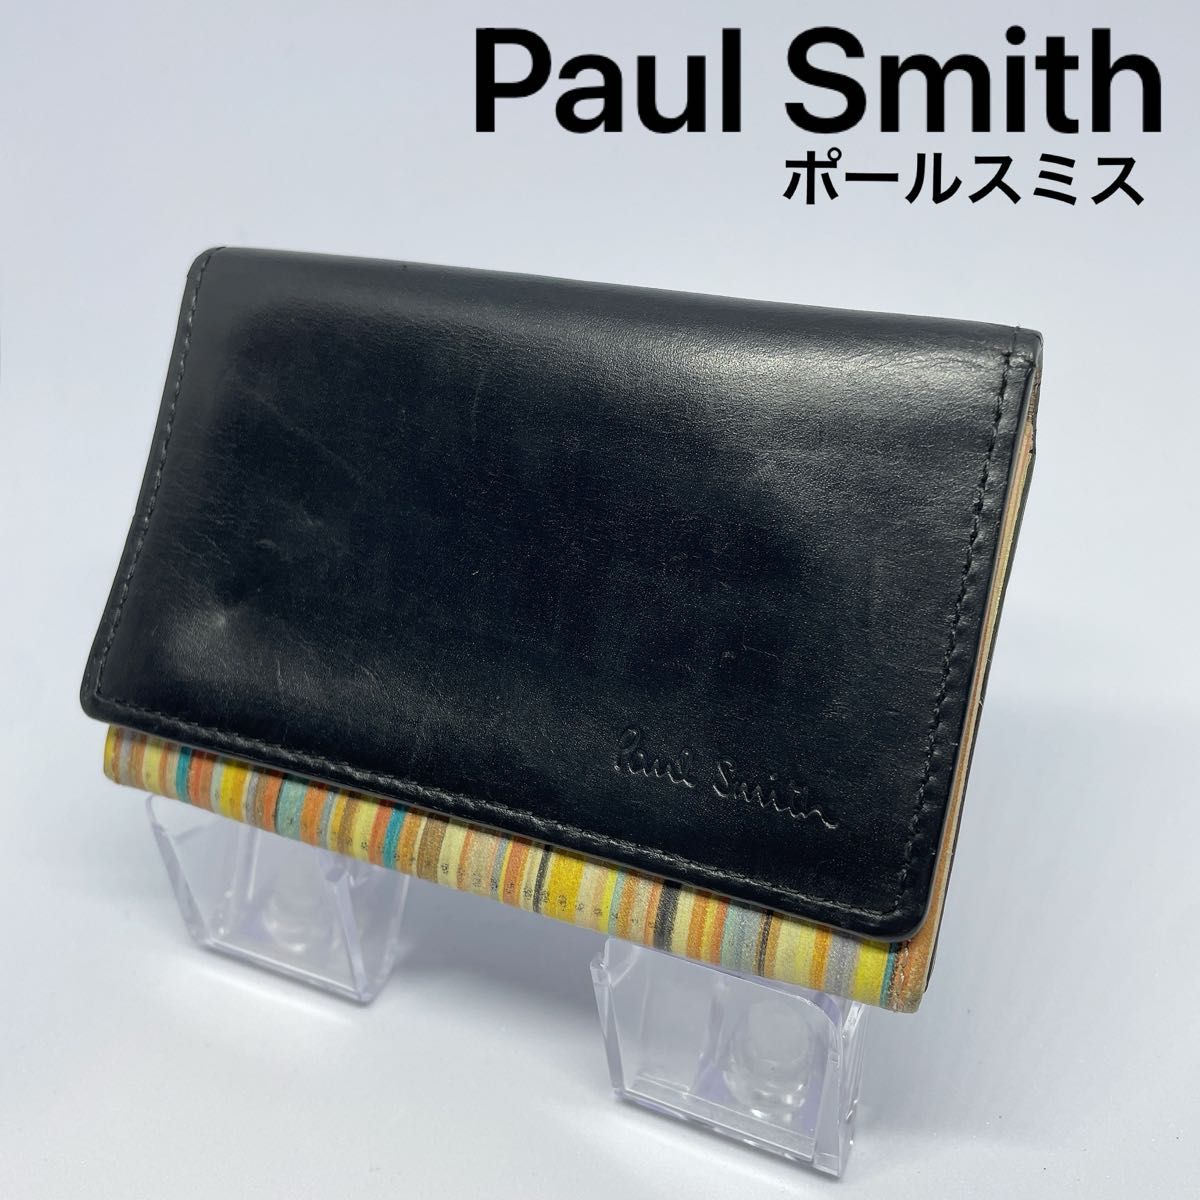 【Paul Smith】ポールスミス 名刺入れ カードケース レザー ブラック